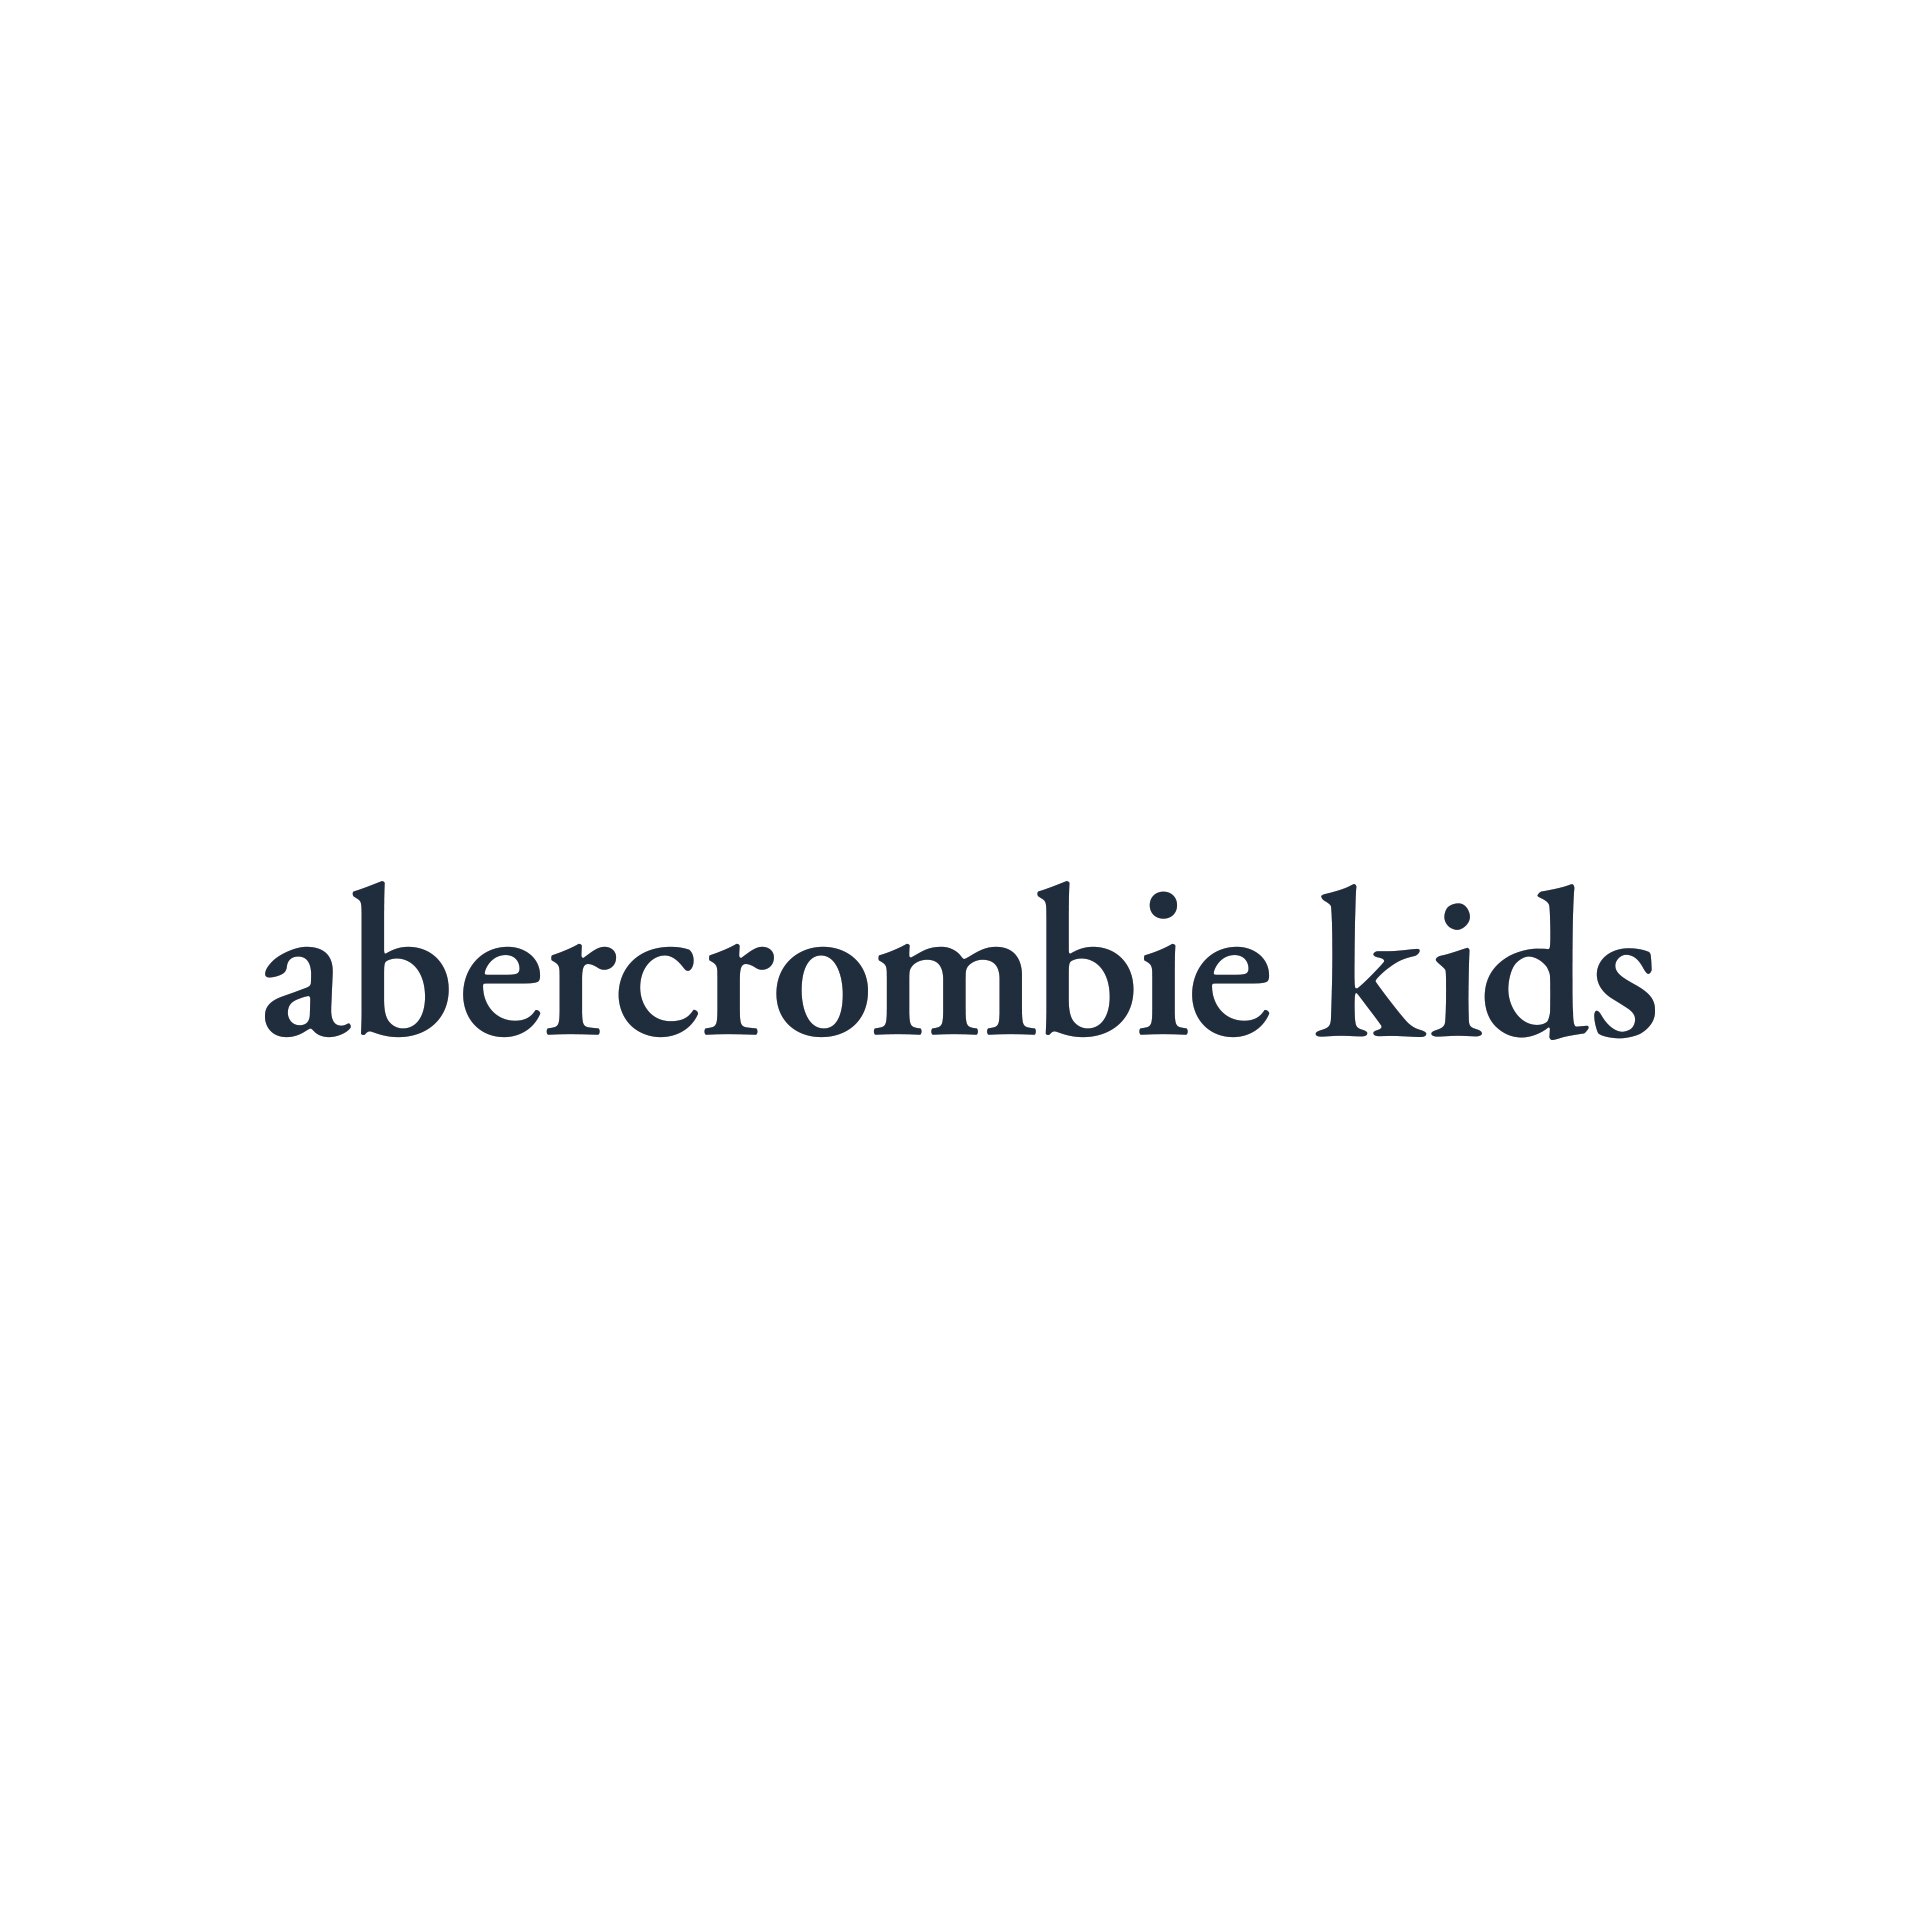 abercrombie kids Announces Partnership 